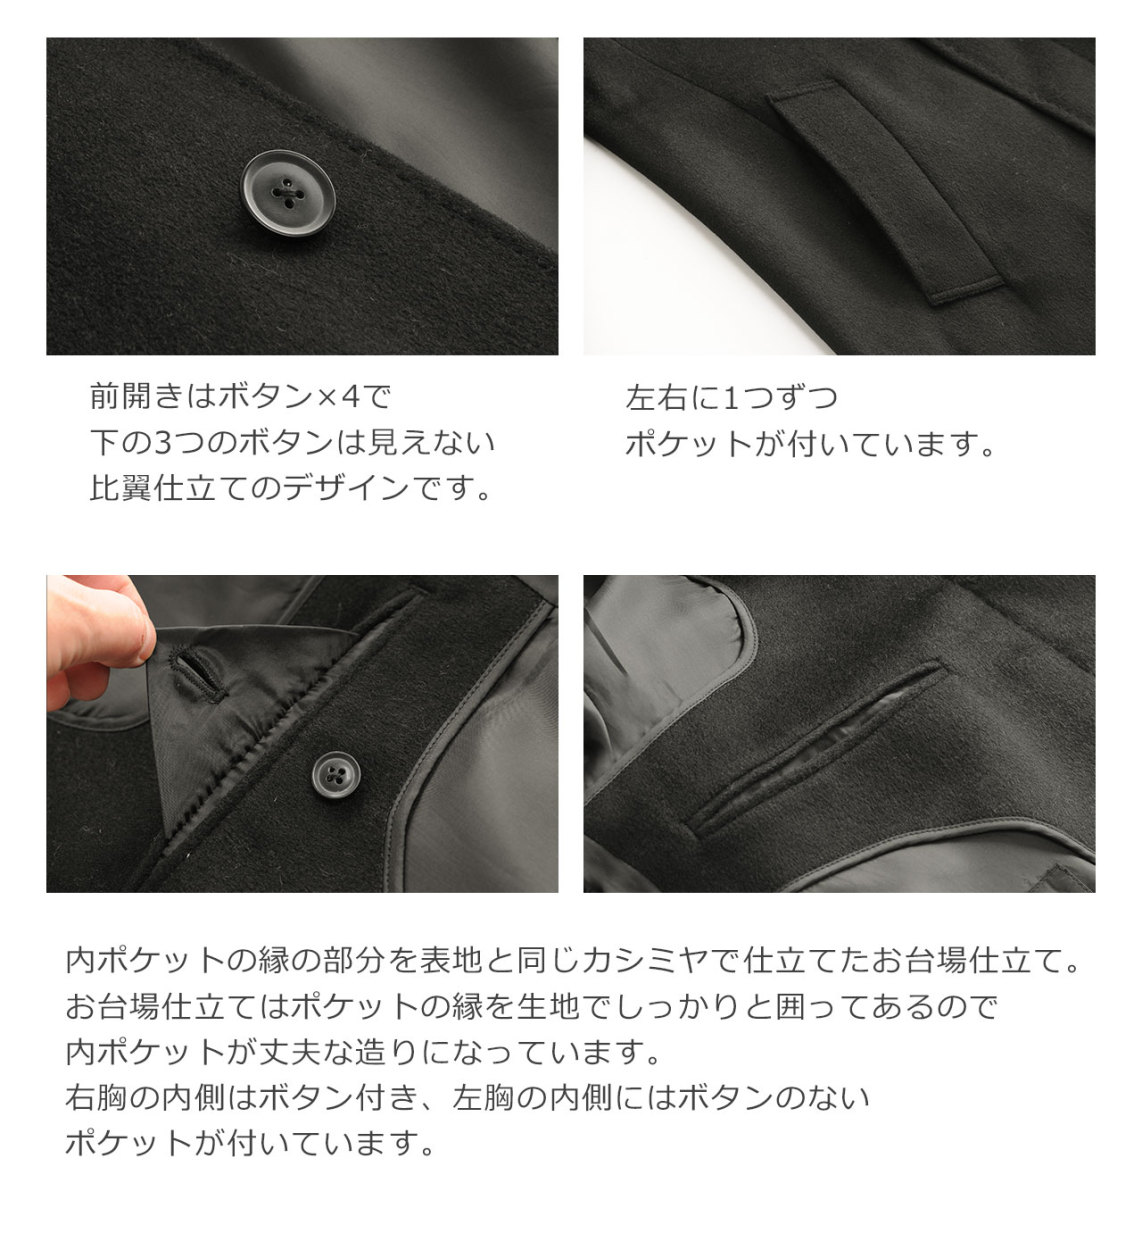 カシミヤ ステンカラー コート メンズ 比翼仕立て ステッチデザイン